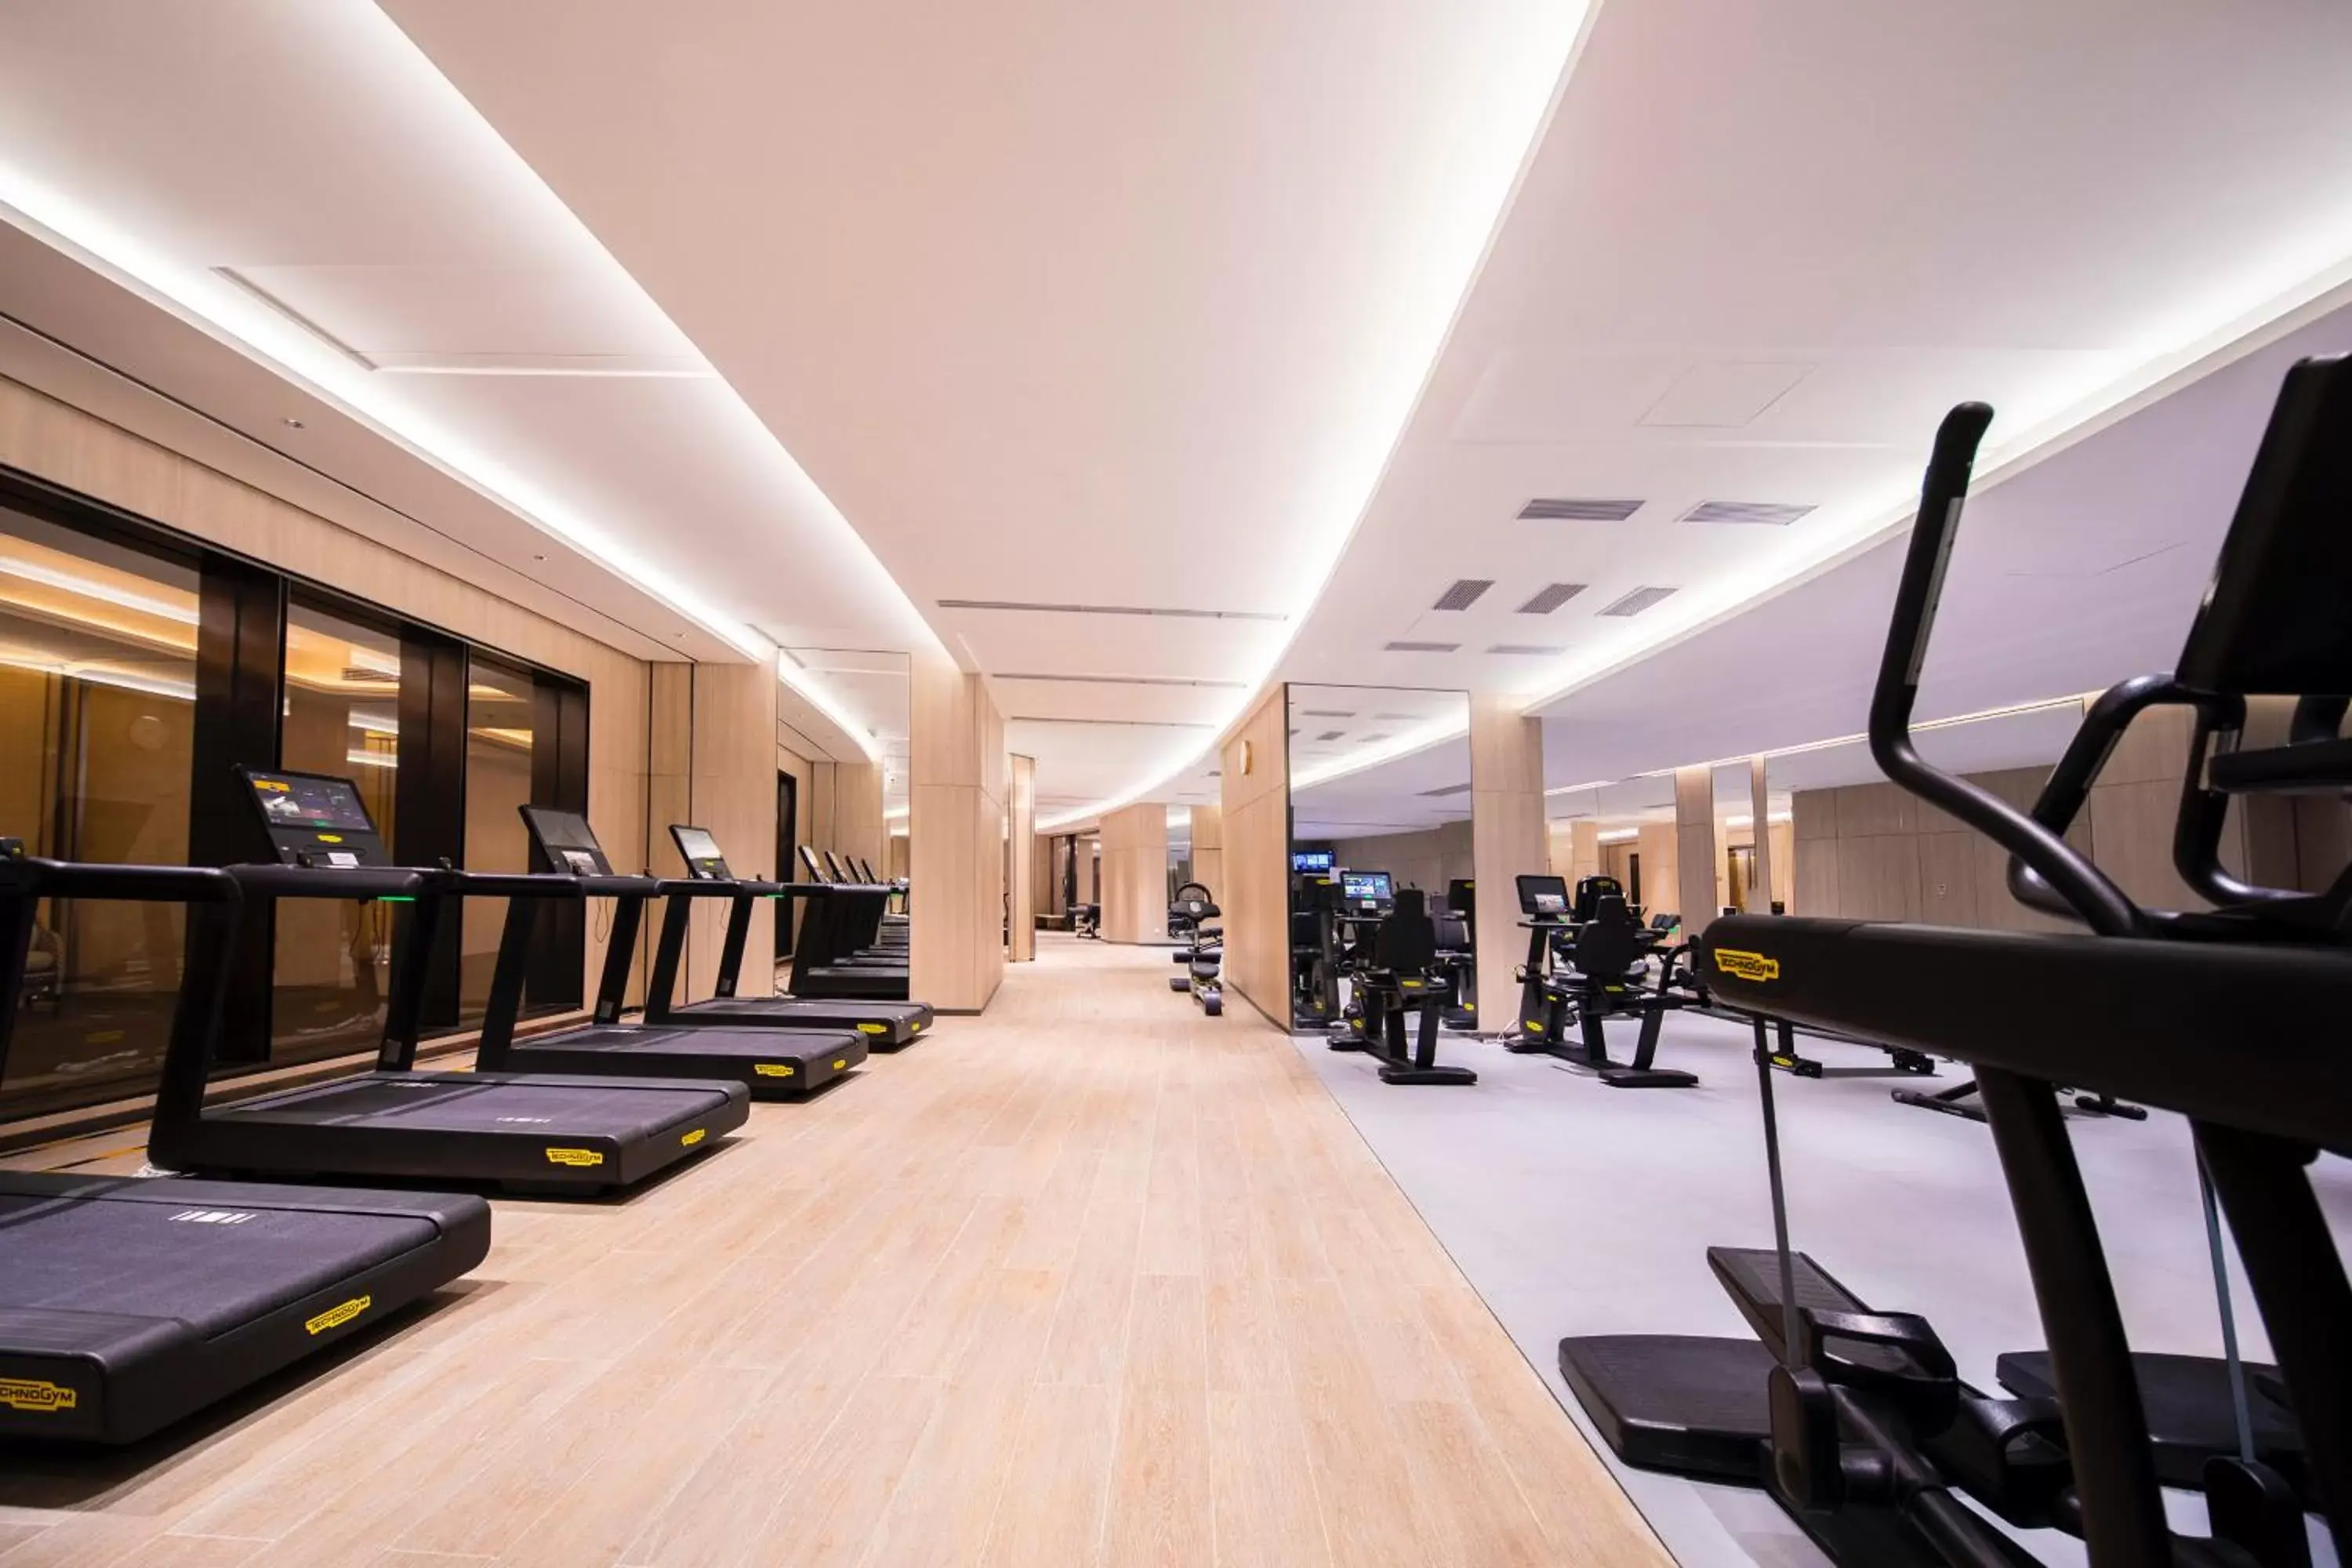 Fitness centre/facilities, Fitness Center/Facilities in Grand Hyatt Beijing